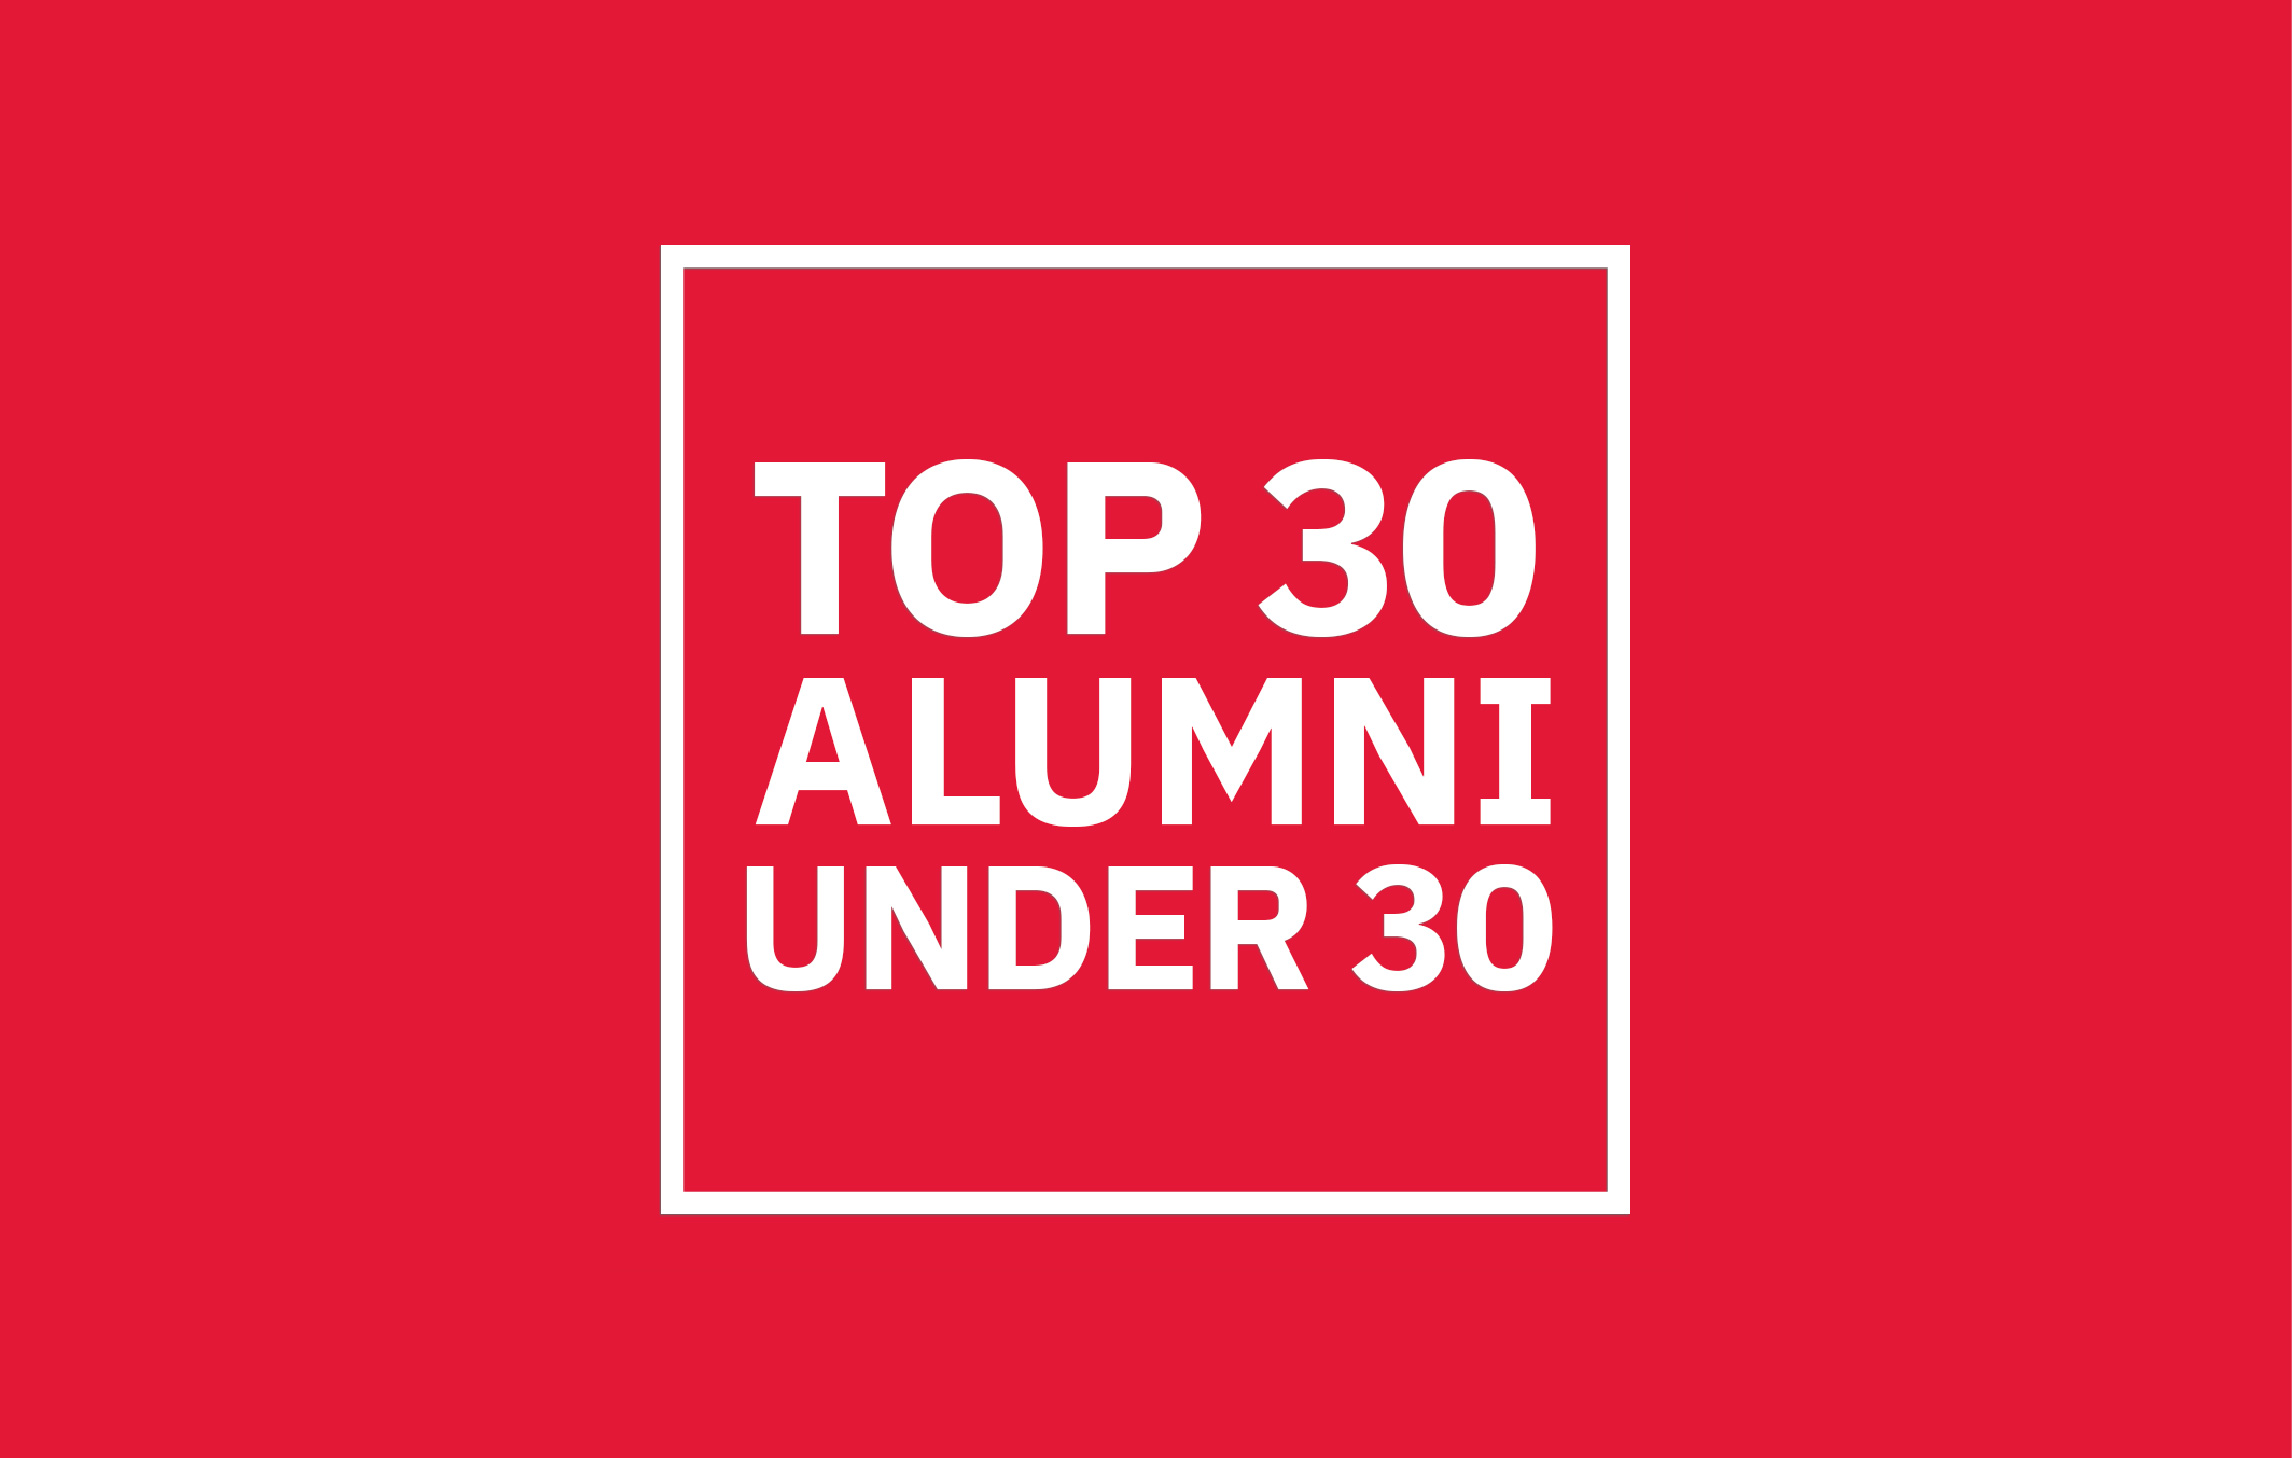 Top 30 Alumni under 30